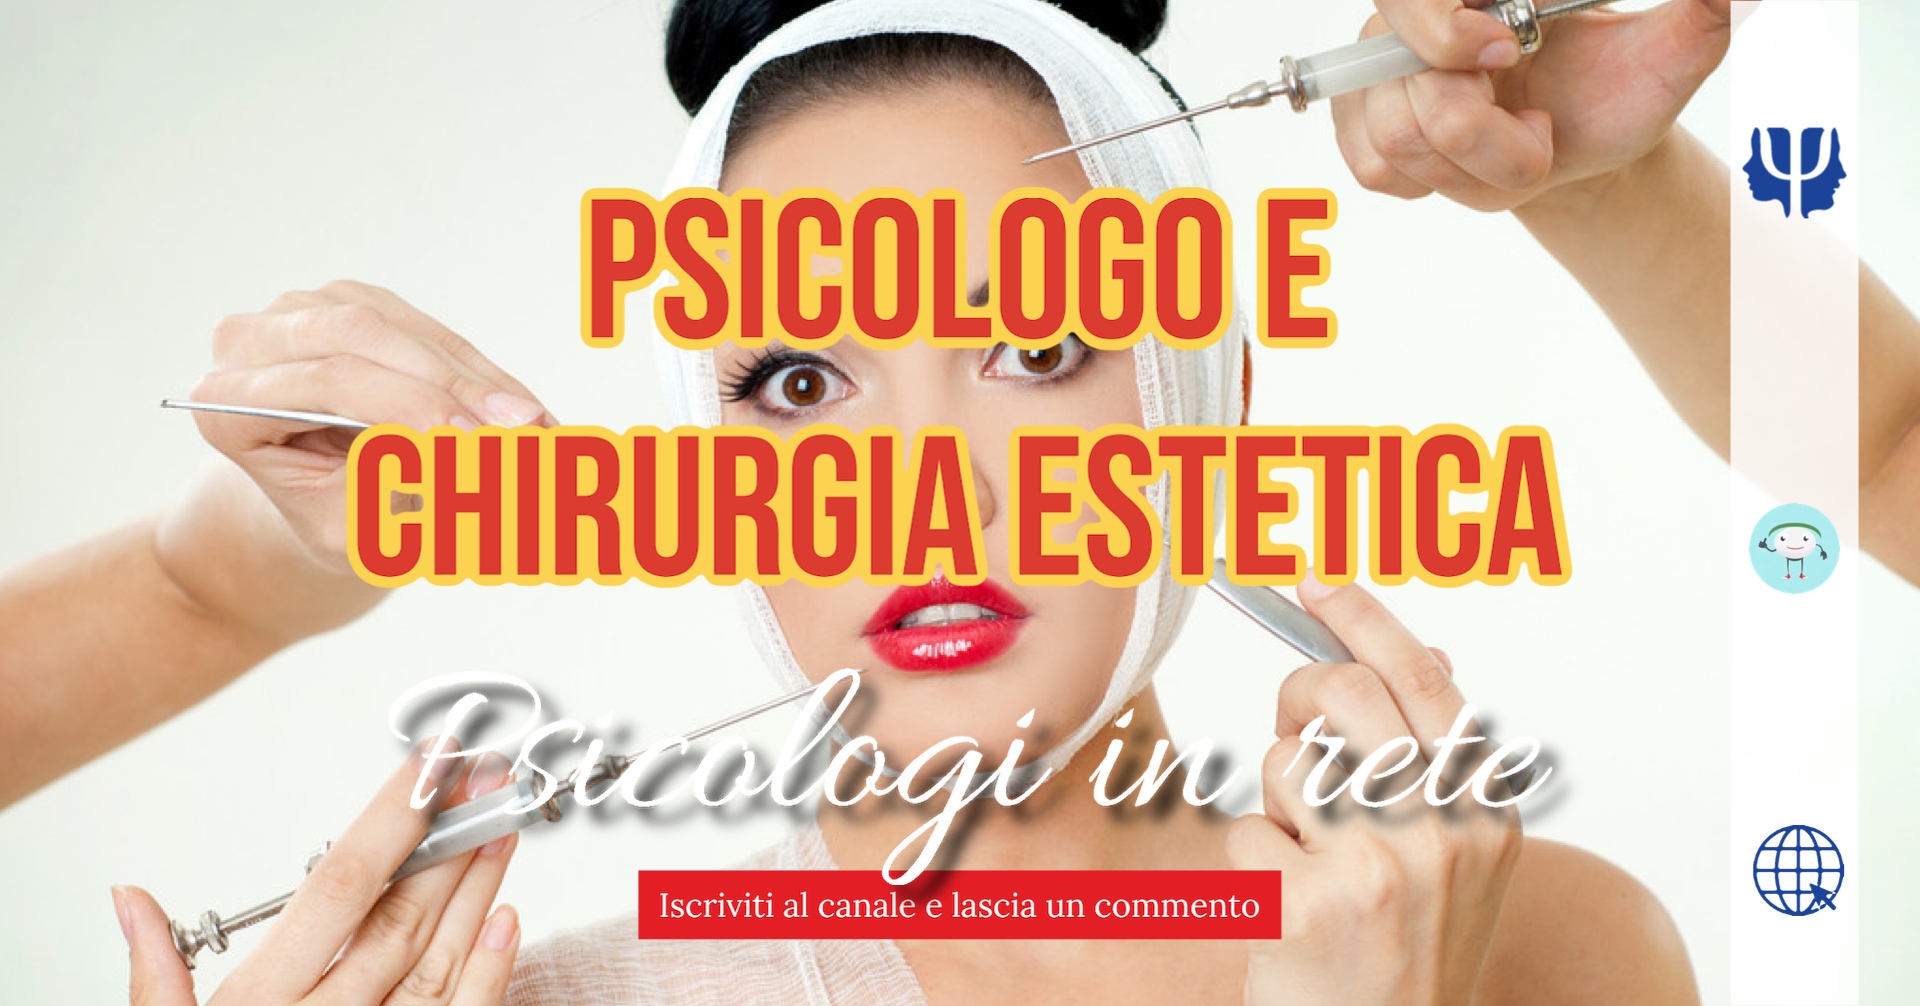 Psicologo e chirurgia estetica